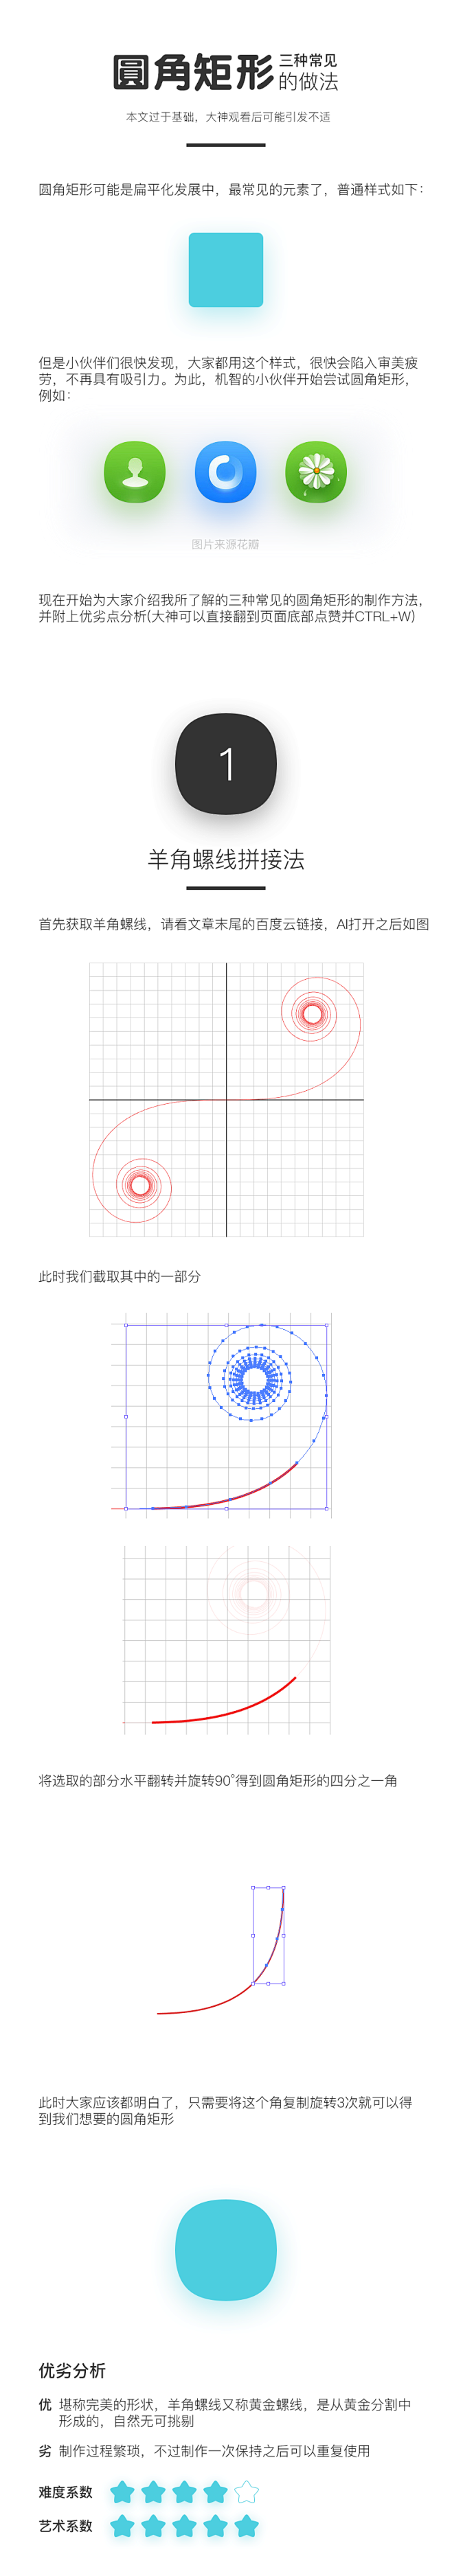 圆角矩形的三种常见绘制方法 by DS_...